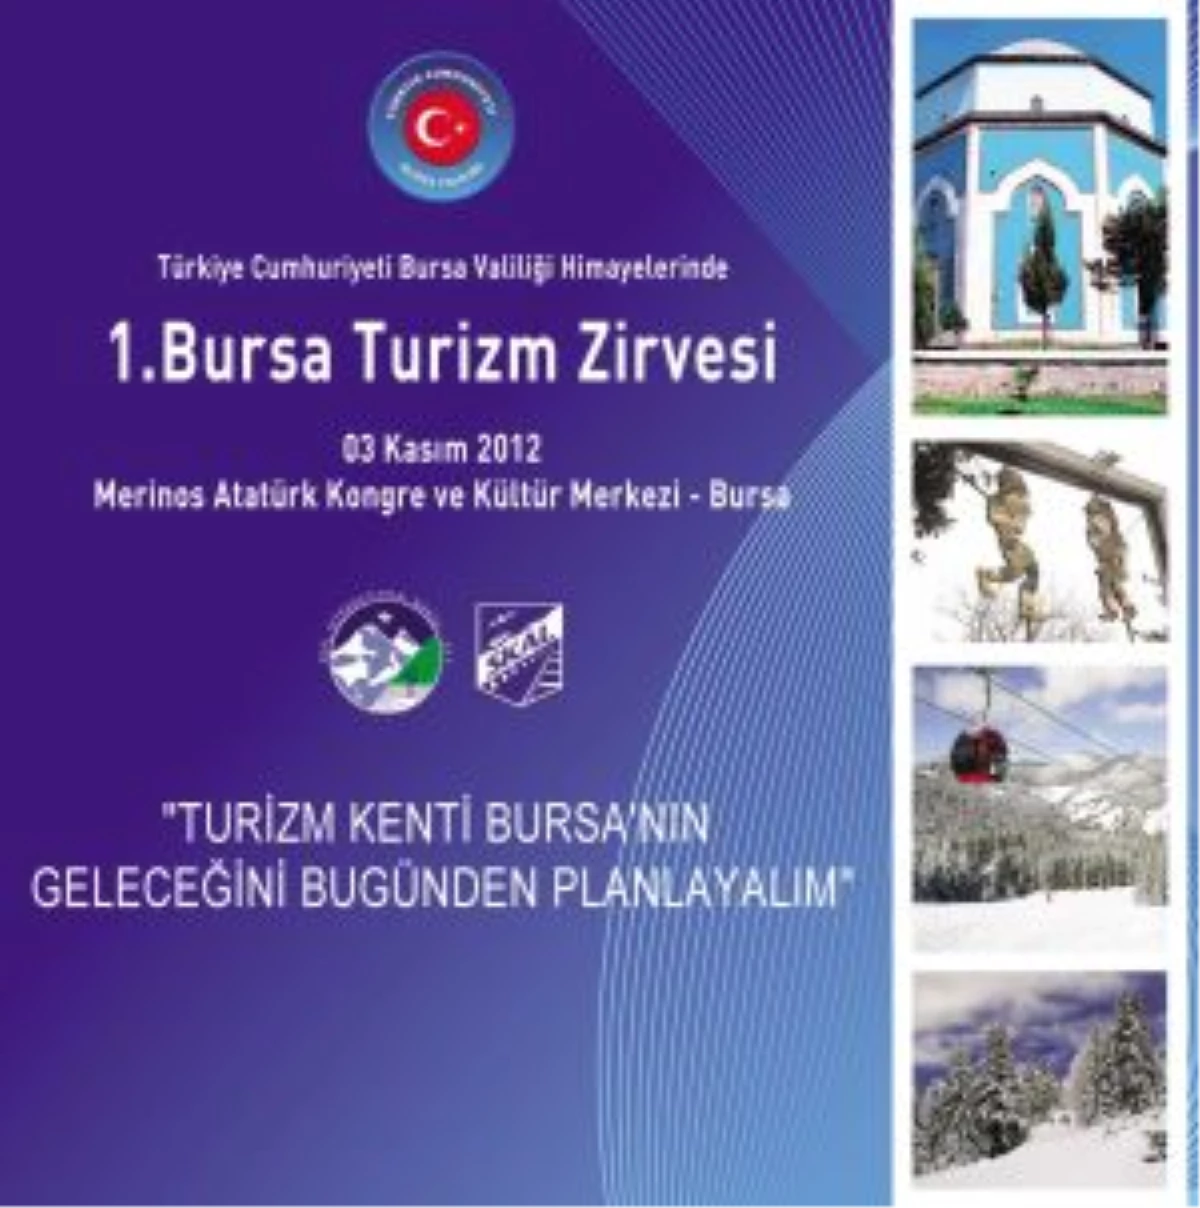 Bursa Turizm Zirvesine Hazırlanıyor